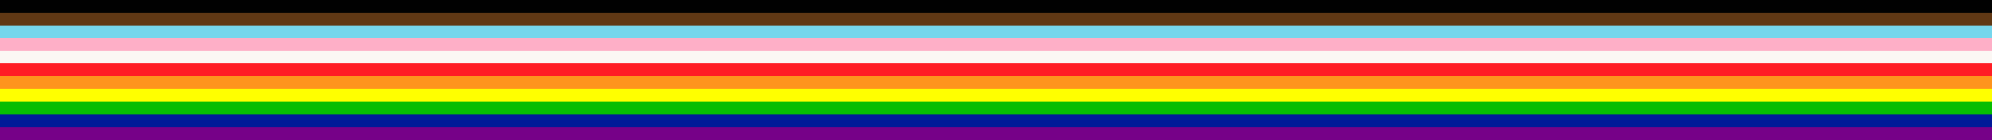 LGBTQ pride progress flag stripes - LGBT rights